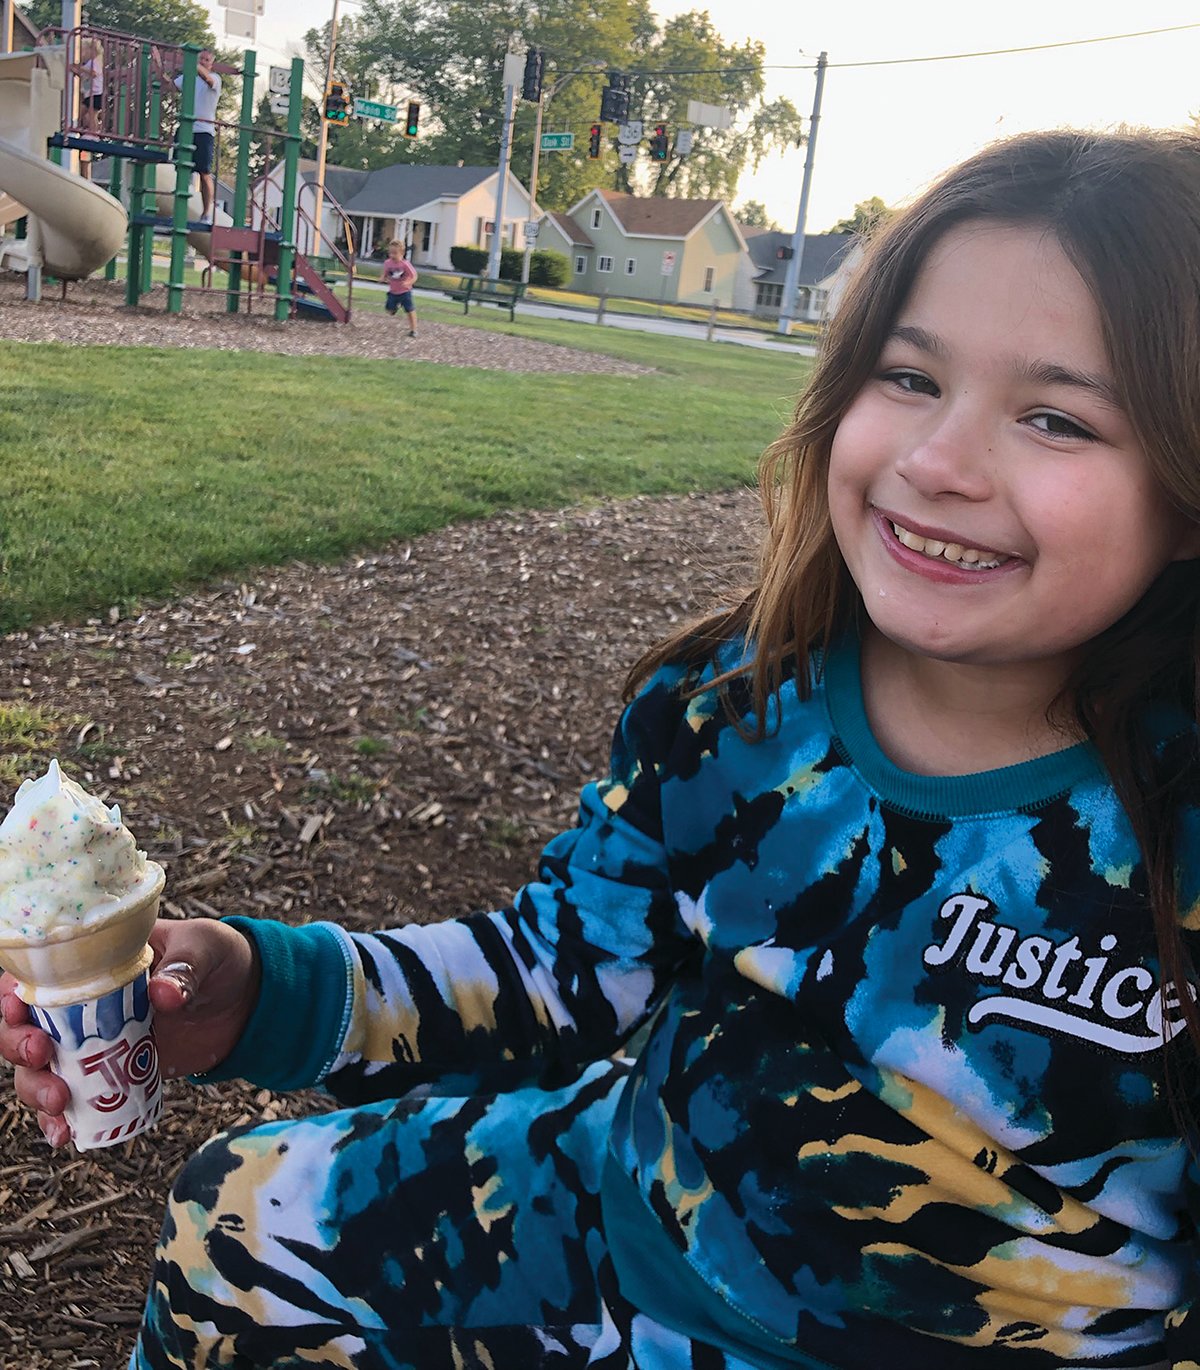 Delila enjoys an ice cream cone.